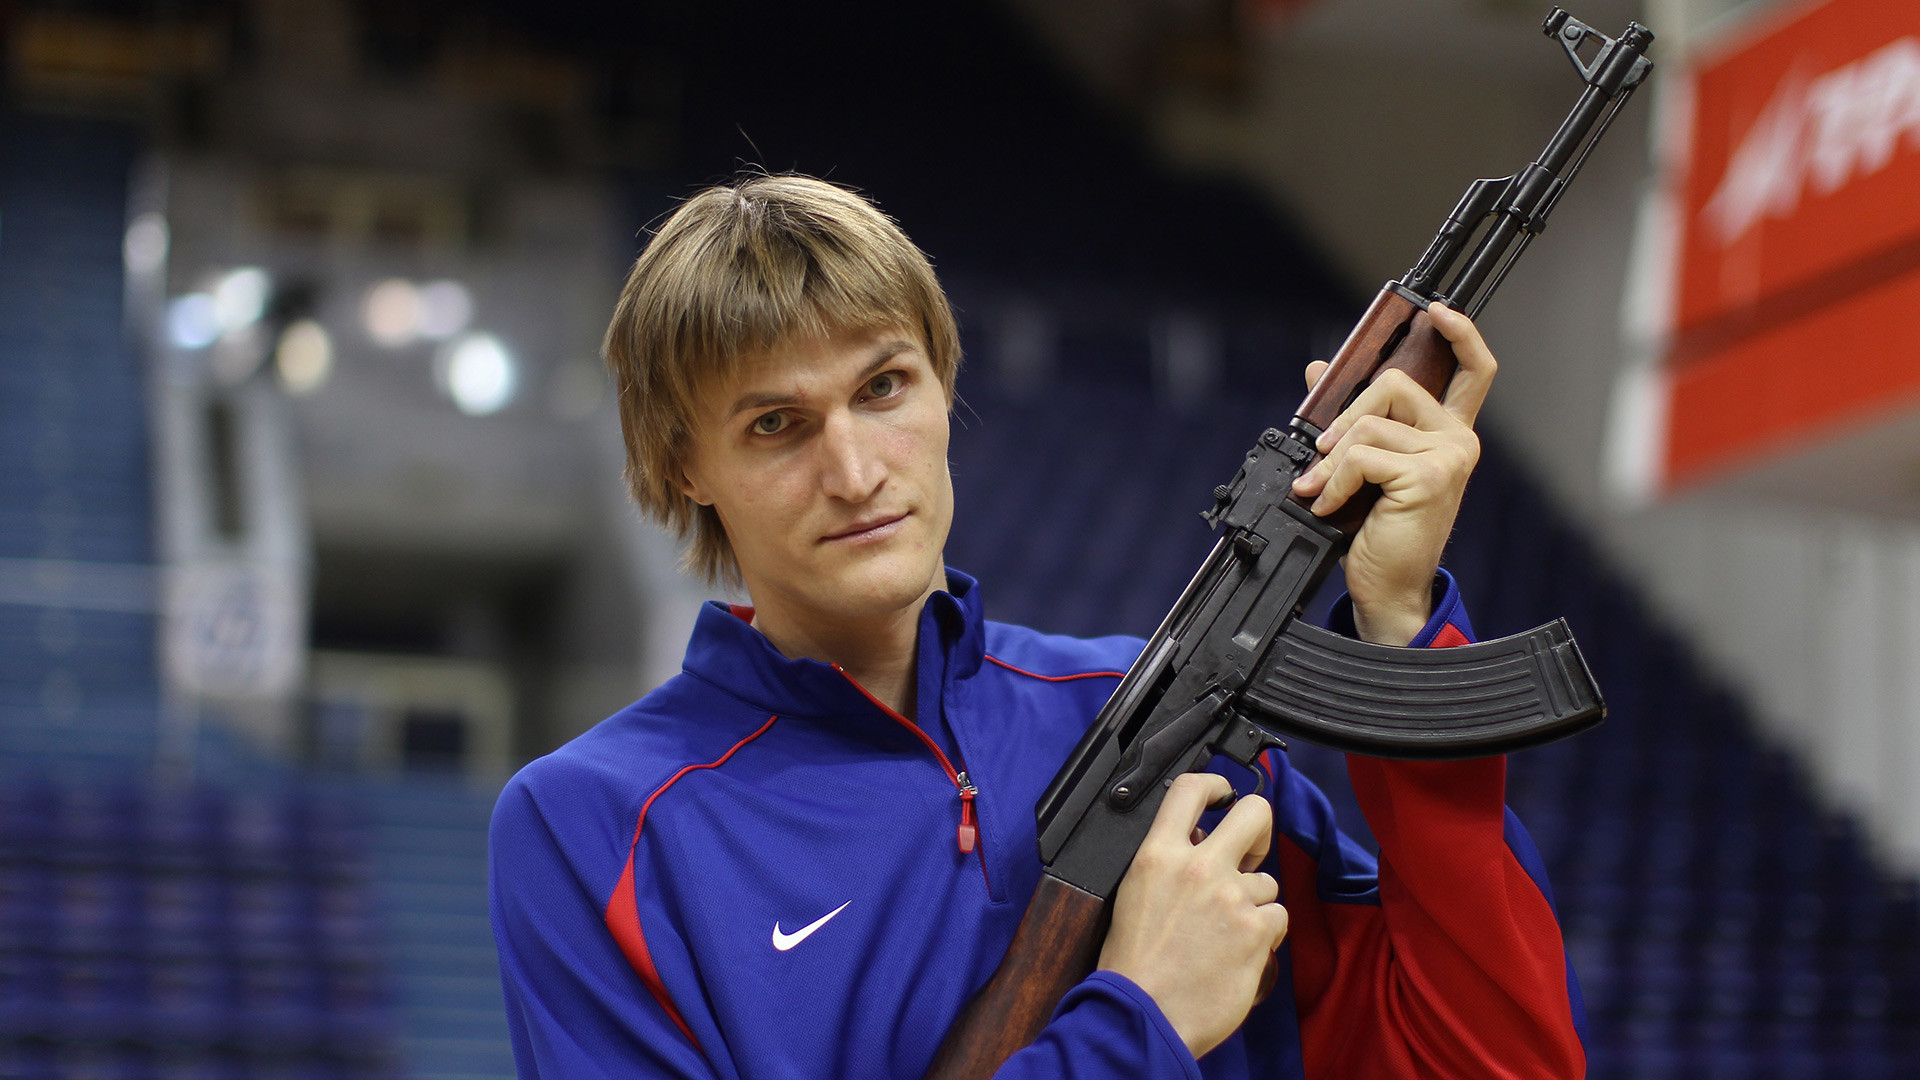 La star du basket Andrei Kirilenko brandissant un AK pour une séance photo dans son club de basketball